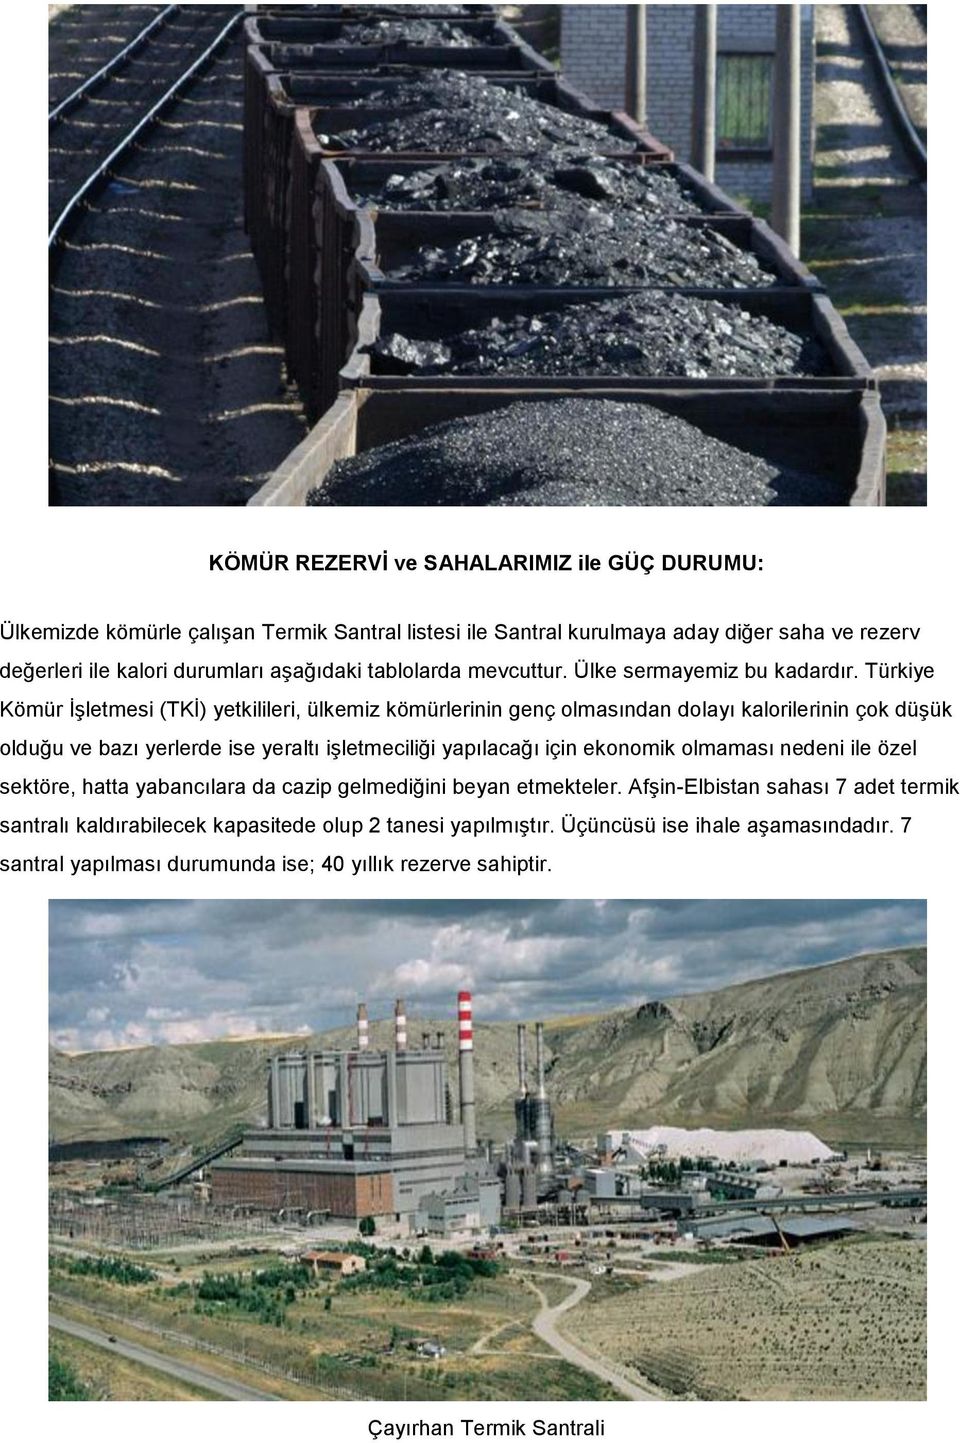 Türkiye Kömür İşletmesi (TKİ) yetkilileri, ülkemiz kömürlerinin genç olmasından dolayı kalorilerinin çok düşük olduğu ve bazı yerlerde ise yeraltı işletmeciliği yapılacağı için